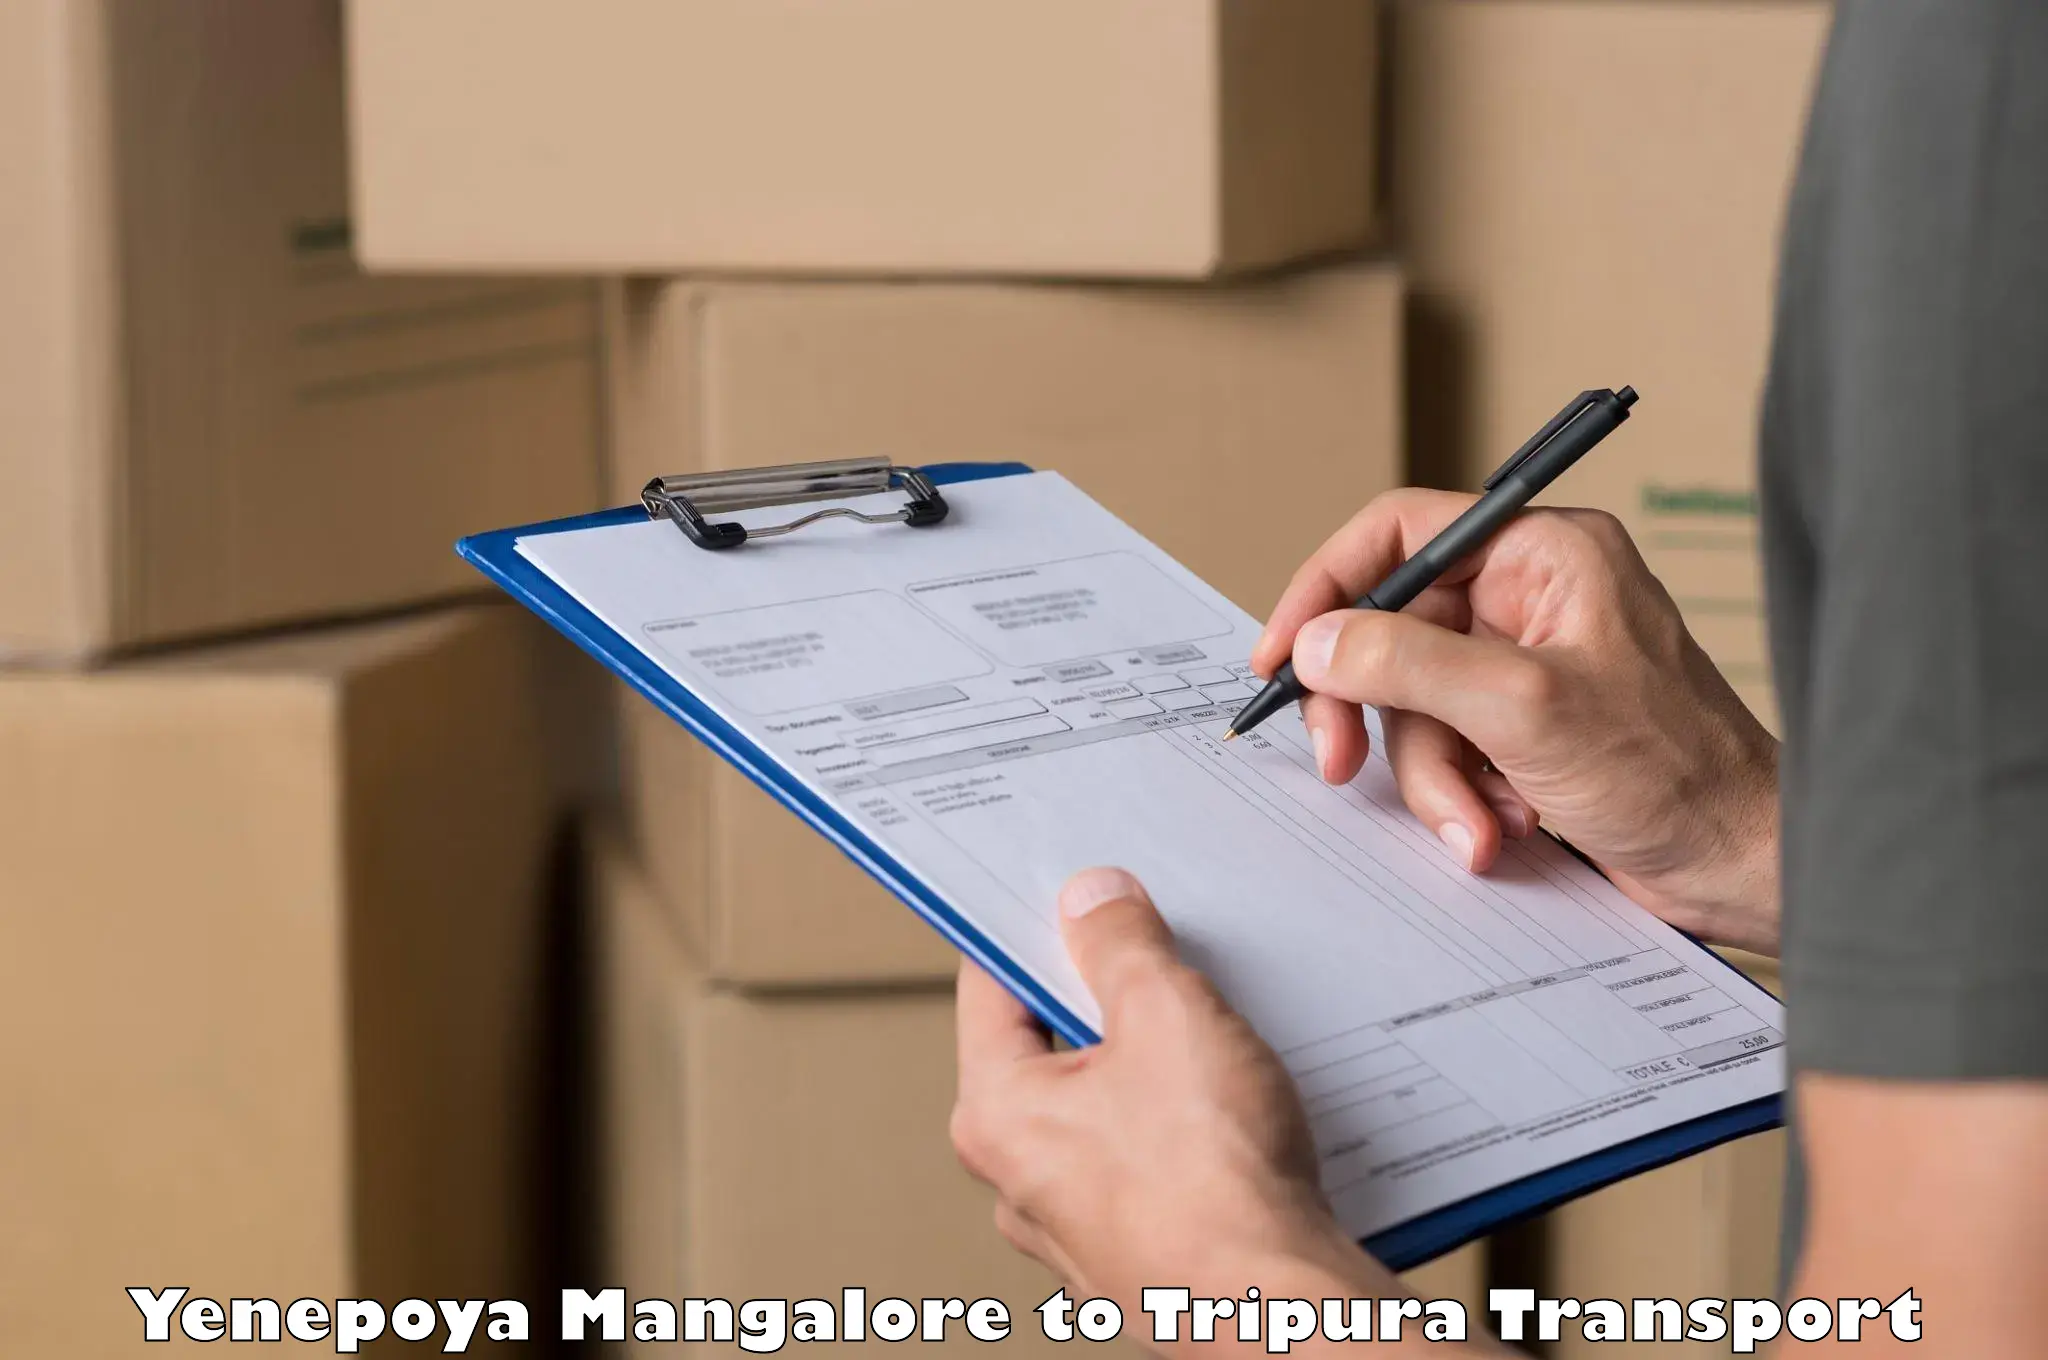 Online transport service Yenepoya Mangalore to Udaipur Tripura